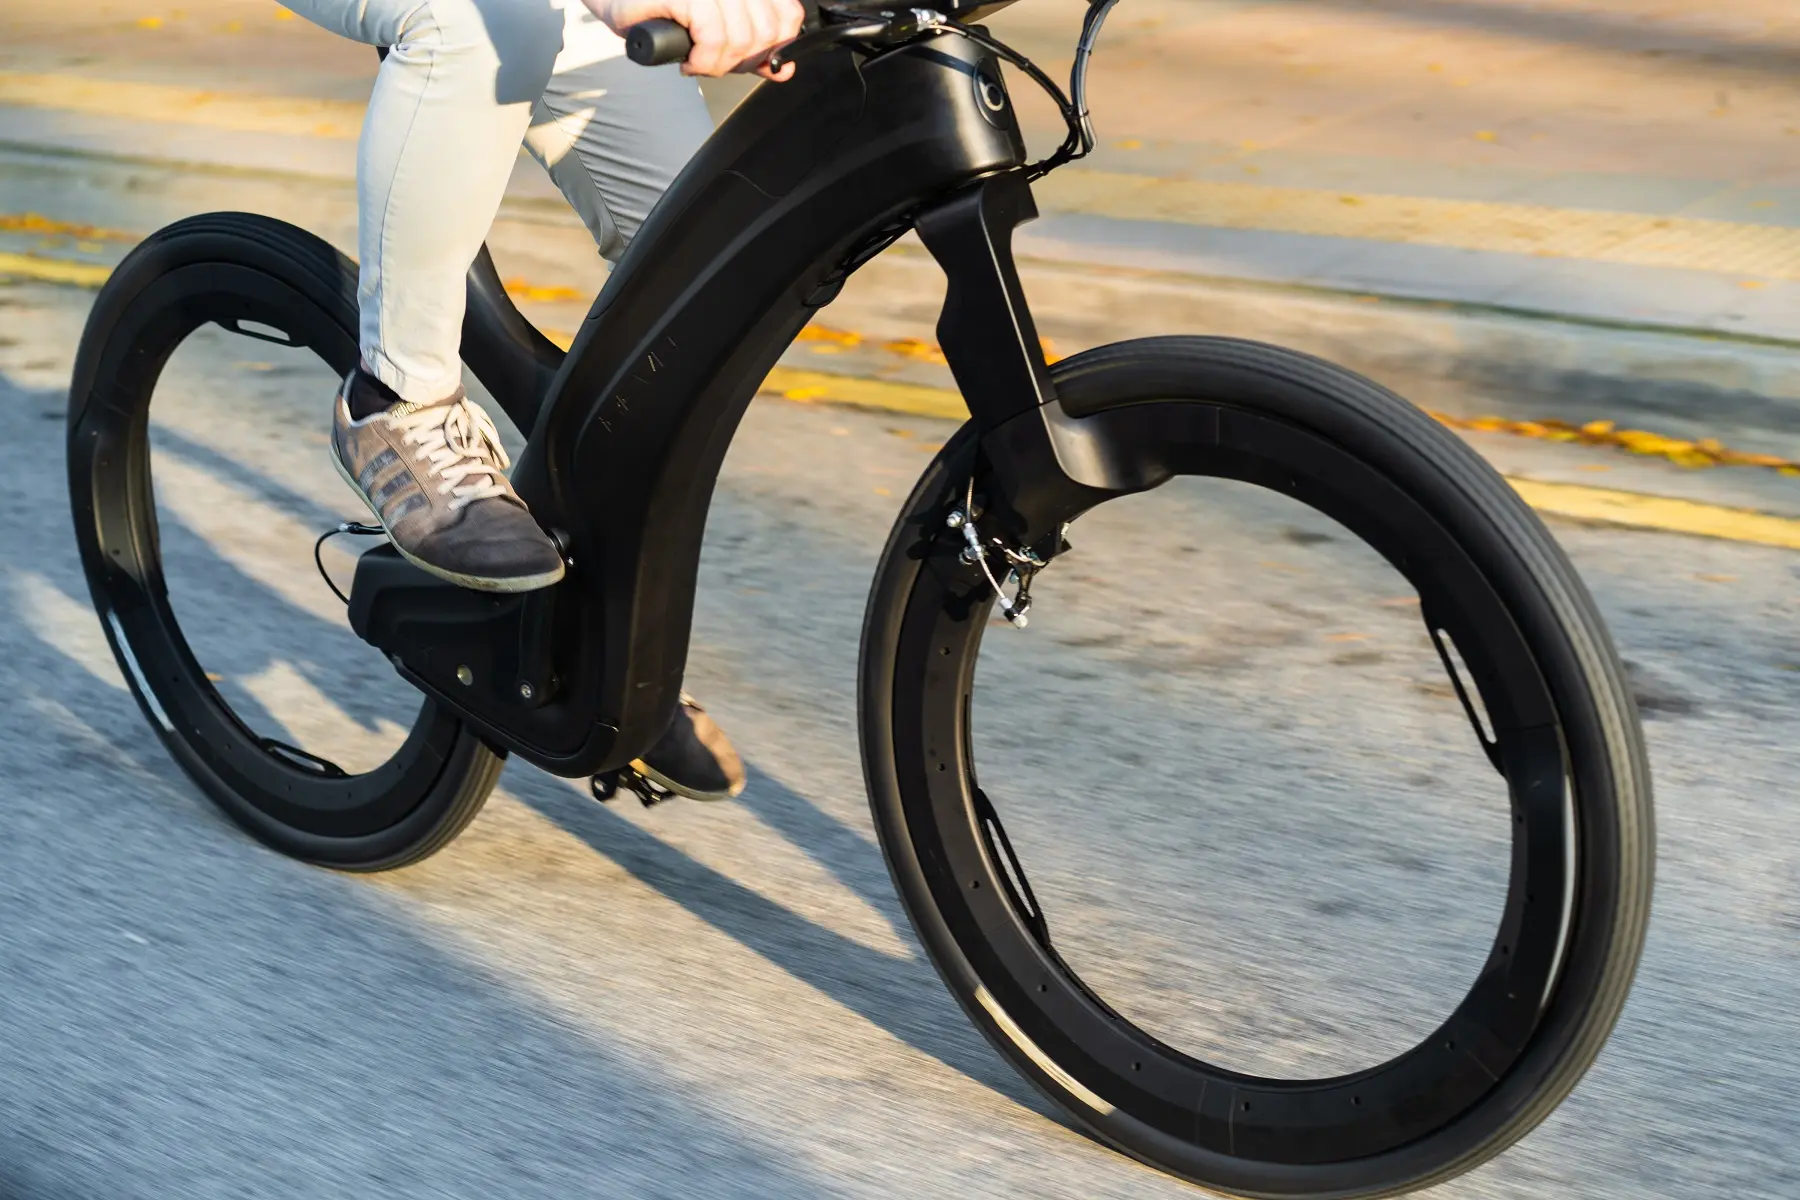 Klant rol klein 5 e-bikes waarmee je opvalt, waaronder een futuristisch, spaakloos model